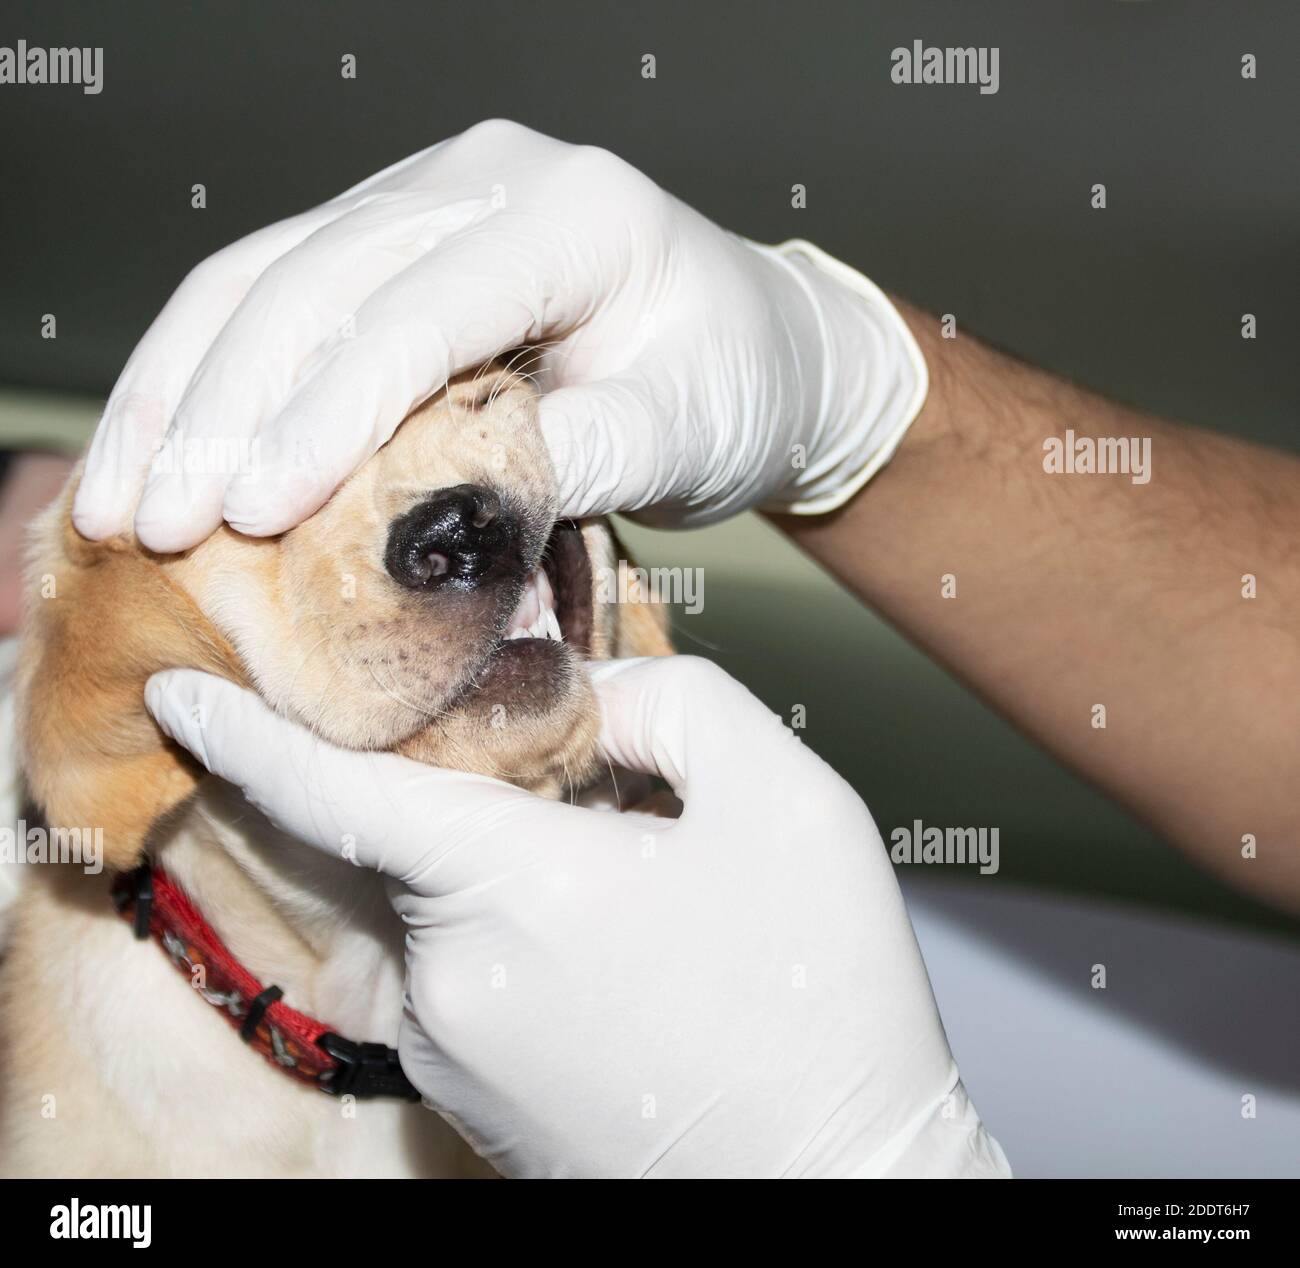 A Veterinarian examins a Labrador puppy's teeth during a medical checkup Stock Photo